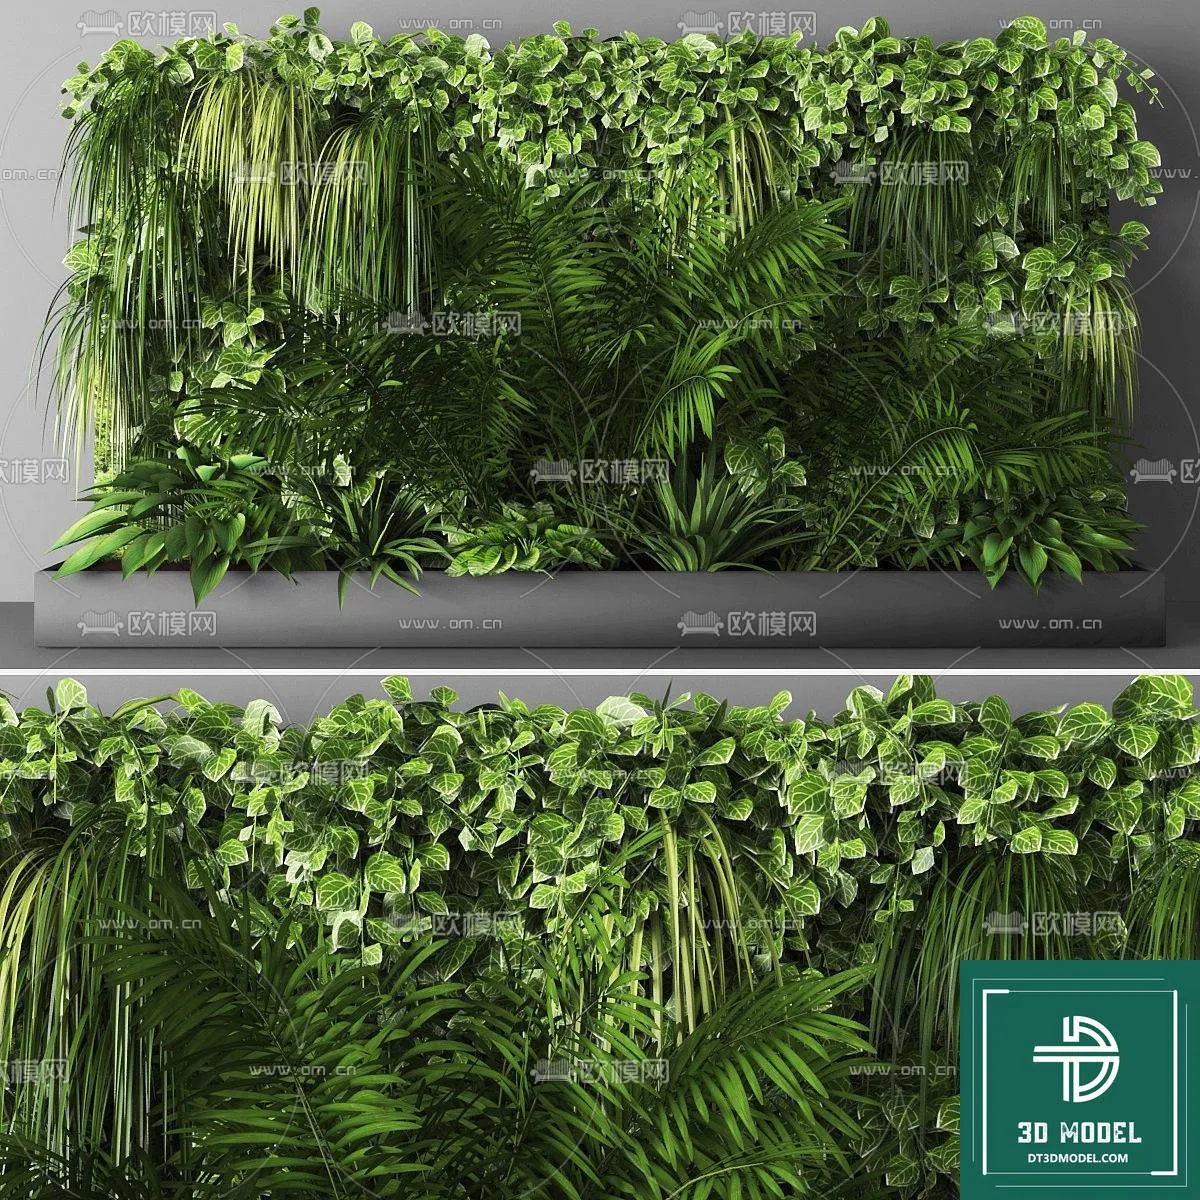 VERTICAL GARDEN – FITOWALL PLANT 3D MODEL – 020